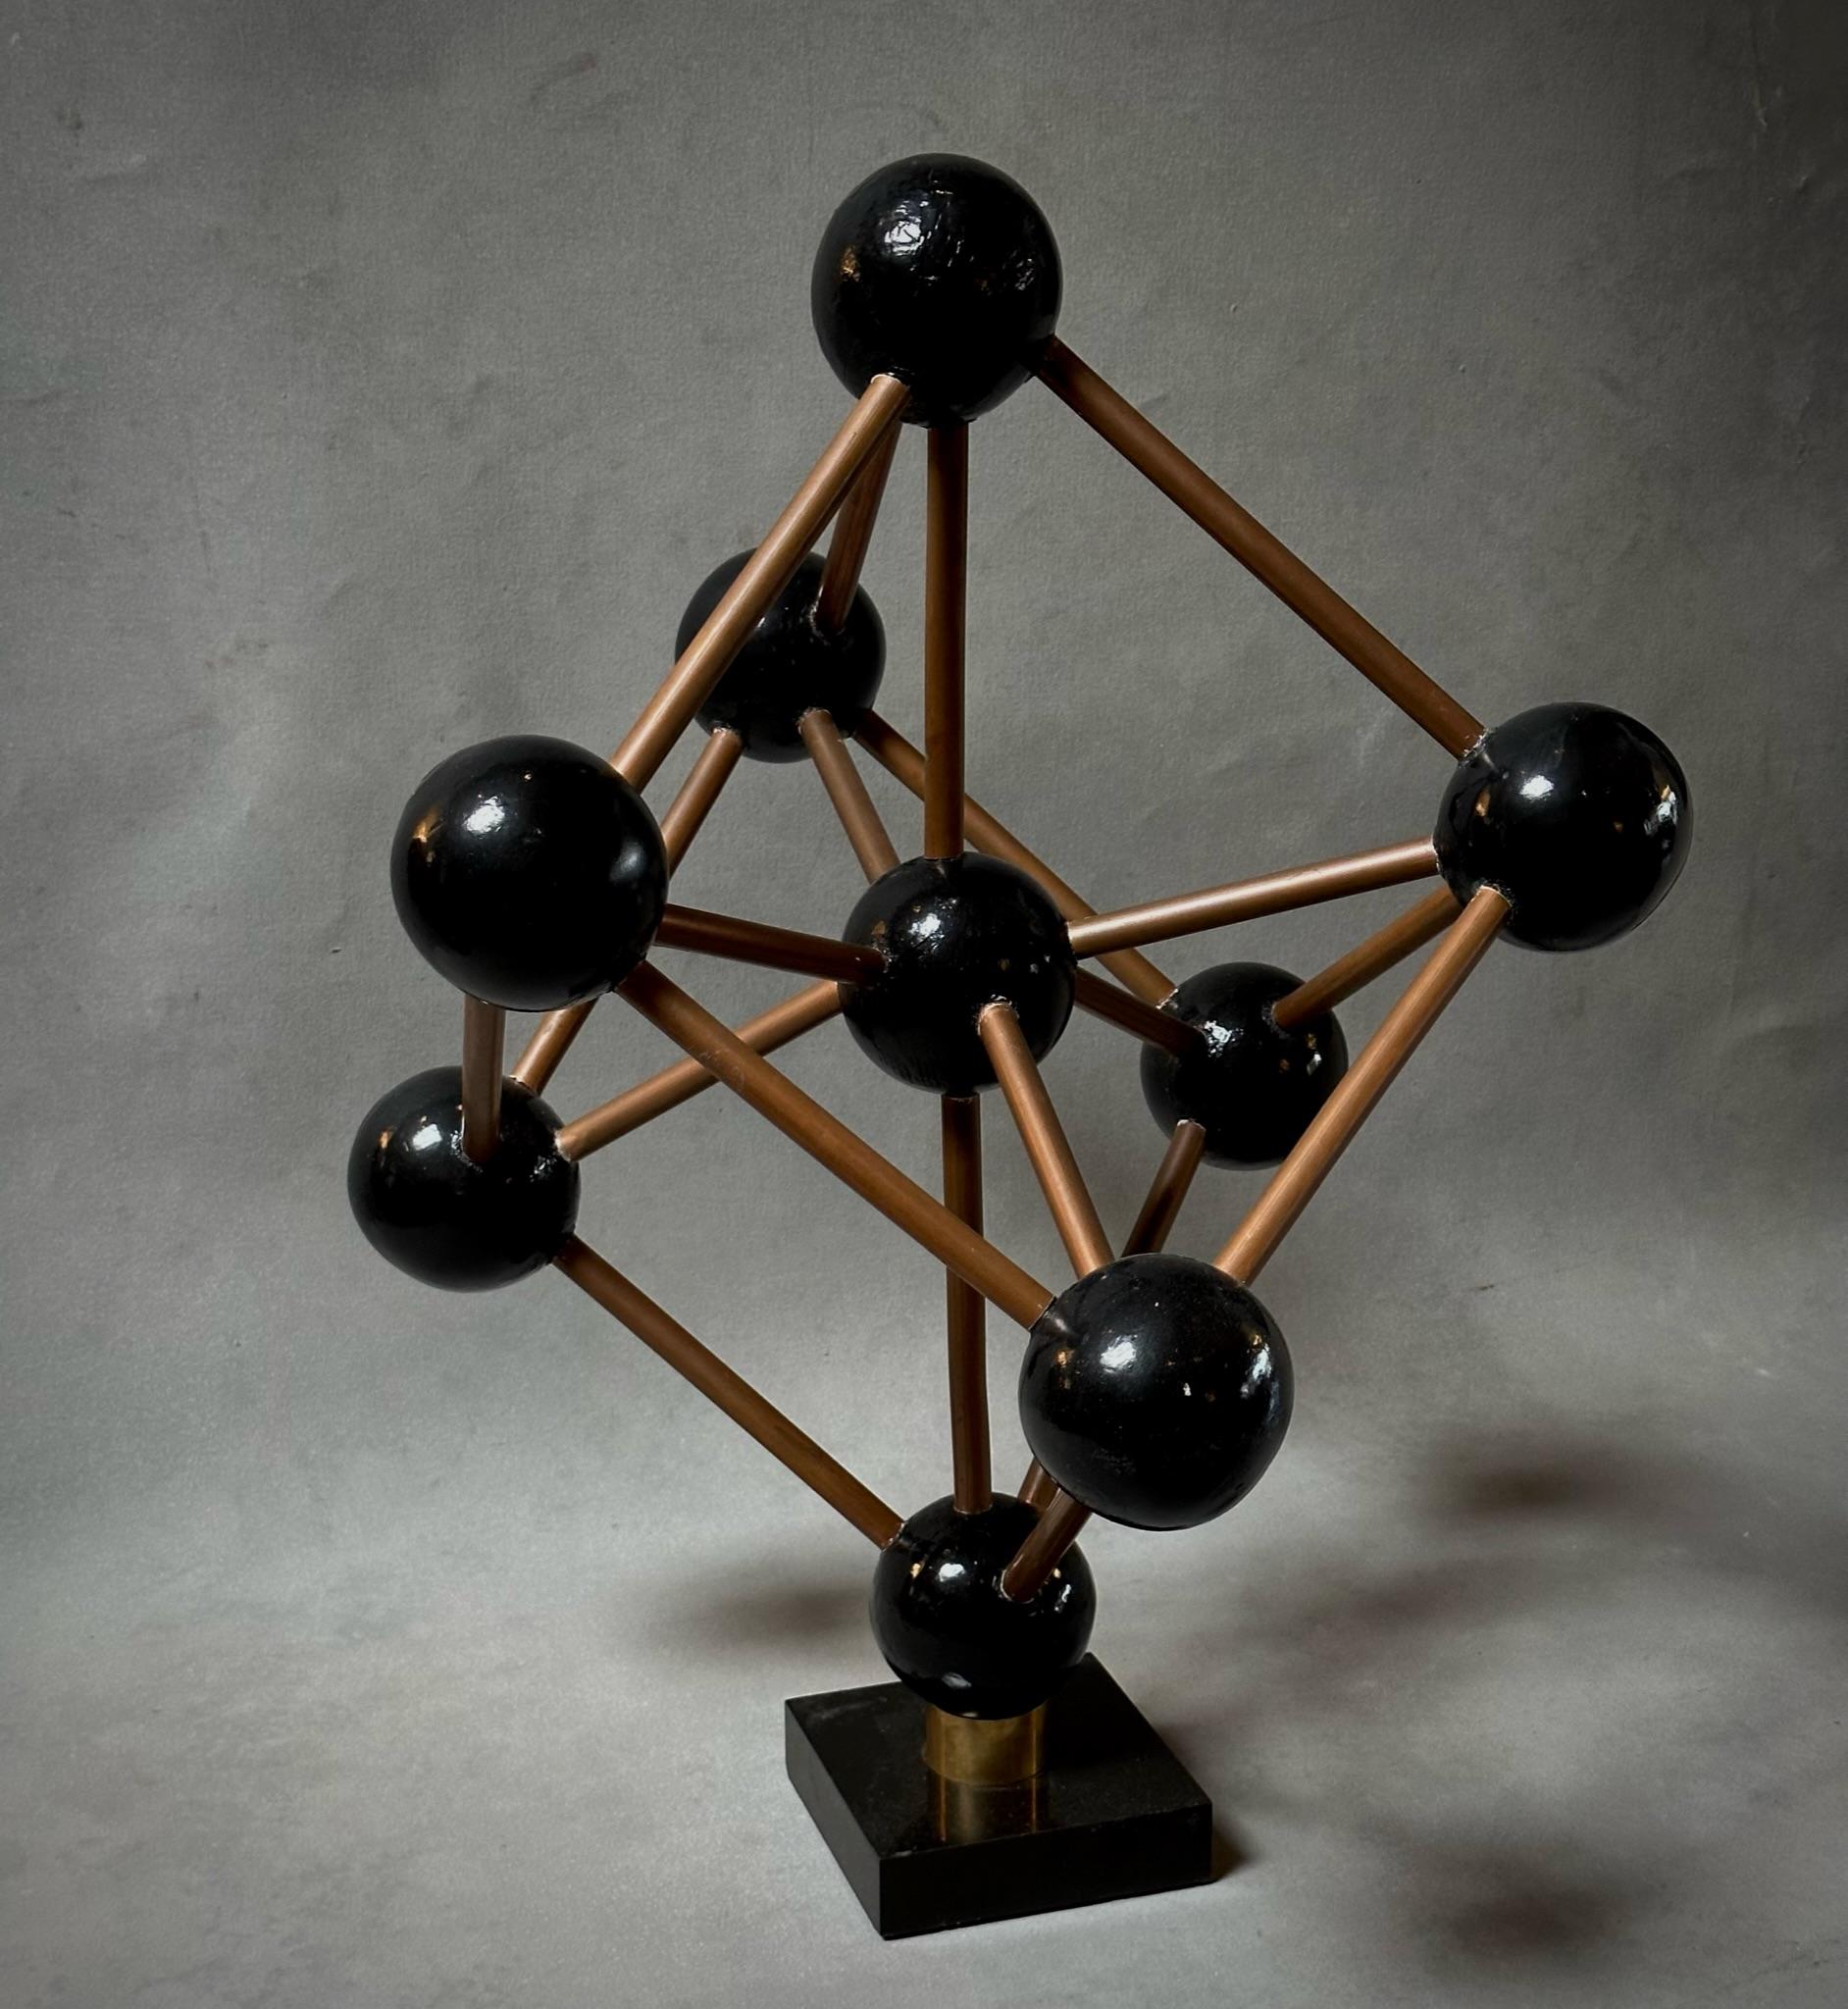 Modèle géométrique belge du milieu du siècle, composé de sphères en bois ébénisé reliées par des tiges métalliques dans un motif modulaire graphique, monté sur une base en marbre noir. Une pièce d'accent sculpturale unique à la forme dynamique.